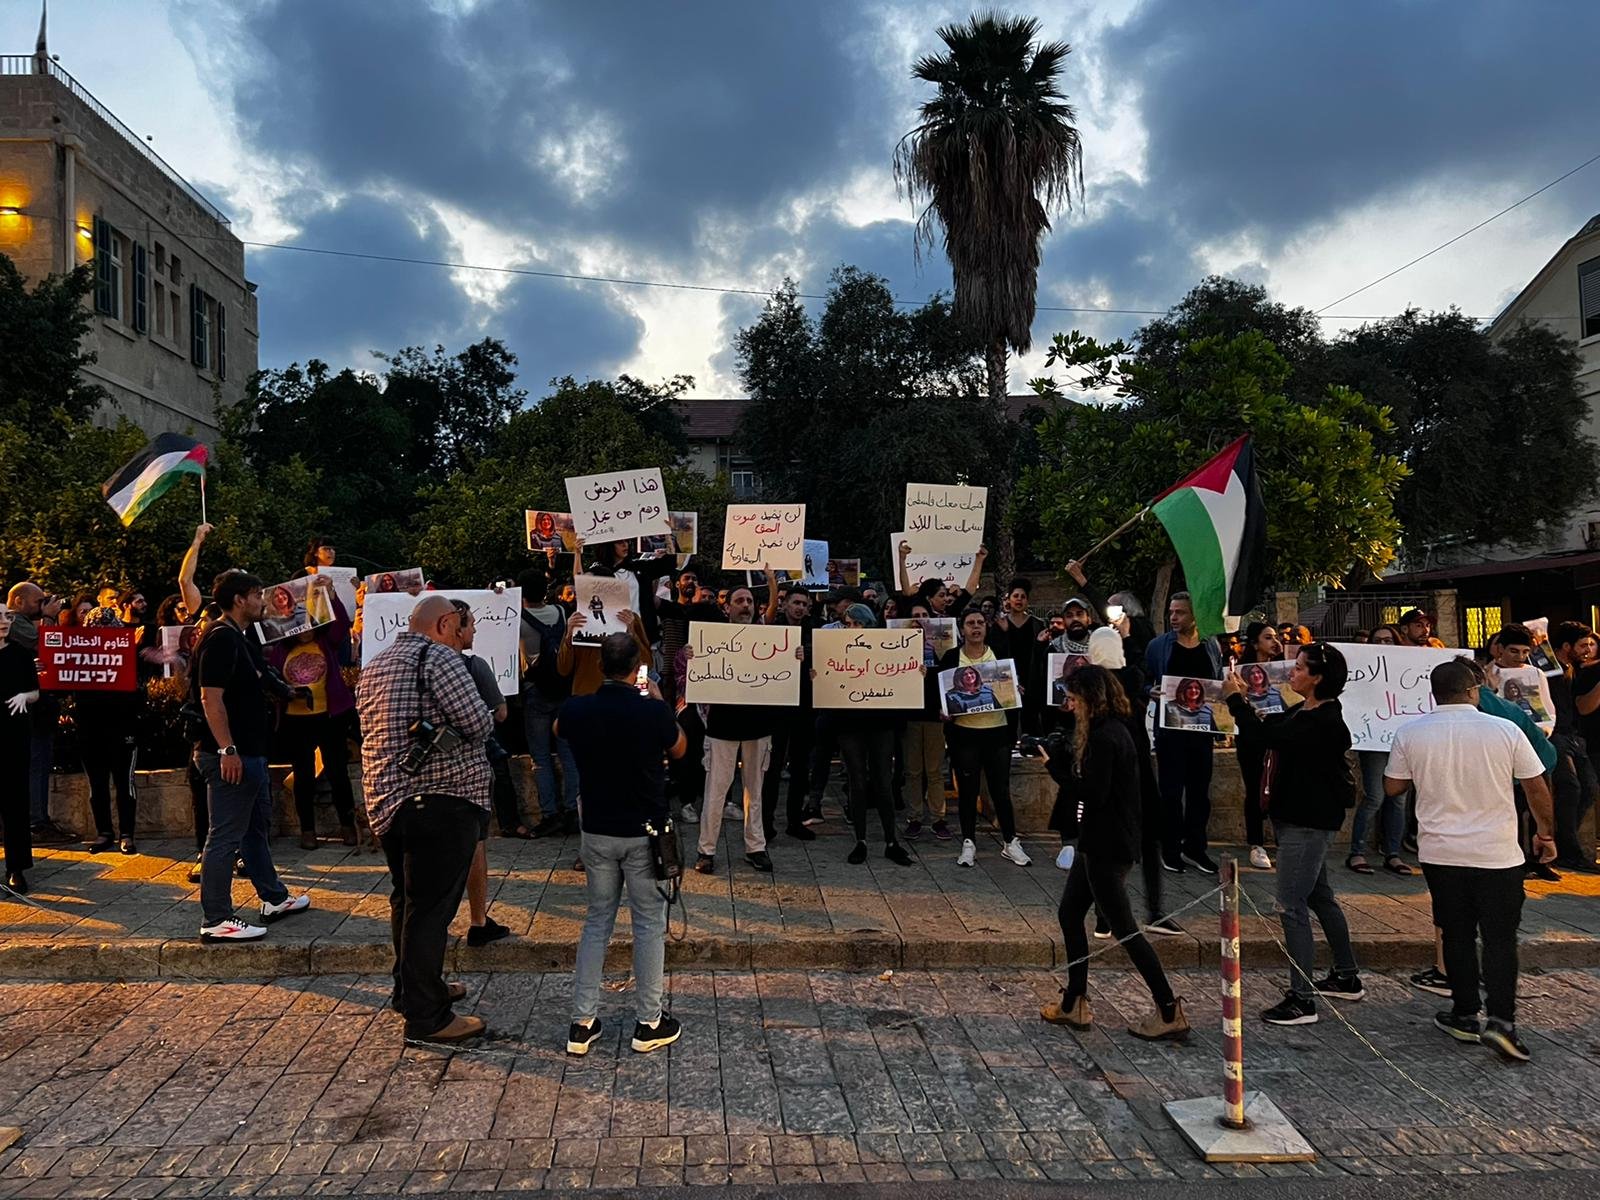 صور الشهيدة وأعلام فلسطينية وإغلاق شارع| مظاهرة حاشدة في حيفا في أعقاب اغتيال شيرين أبو عاقلة-0